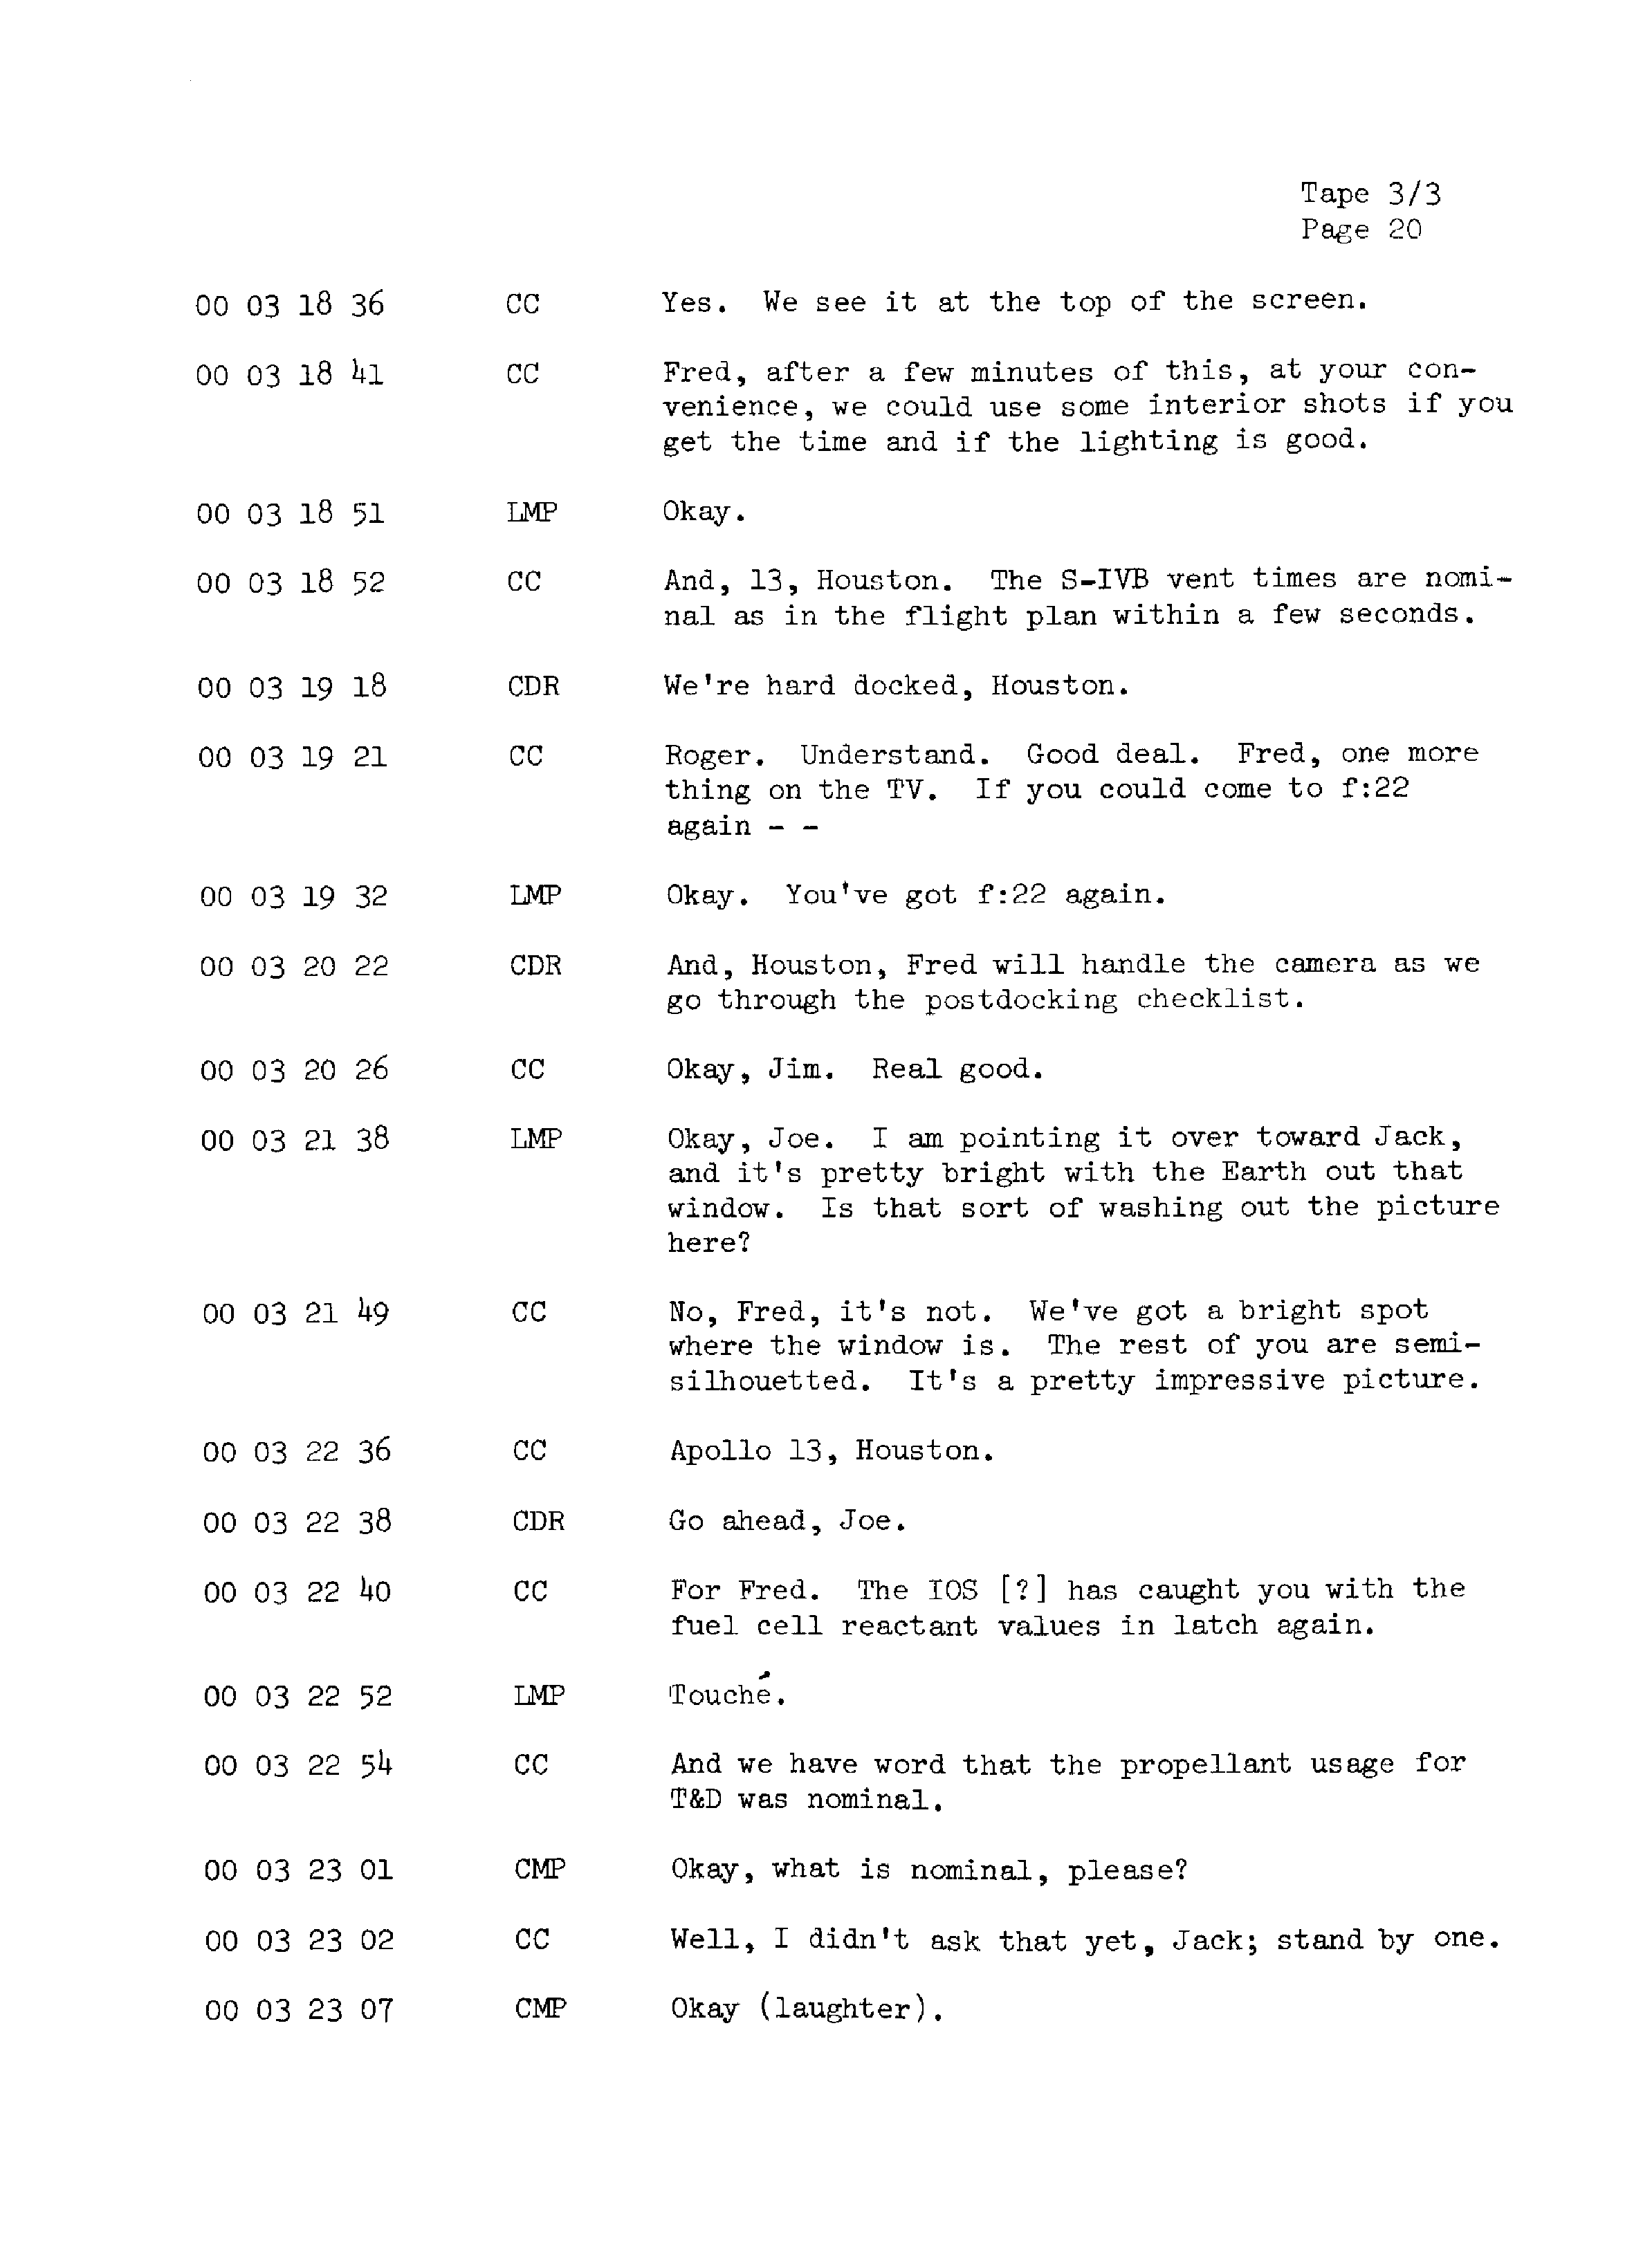 Page 27 of Apollo 13’s original transcript